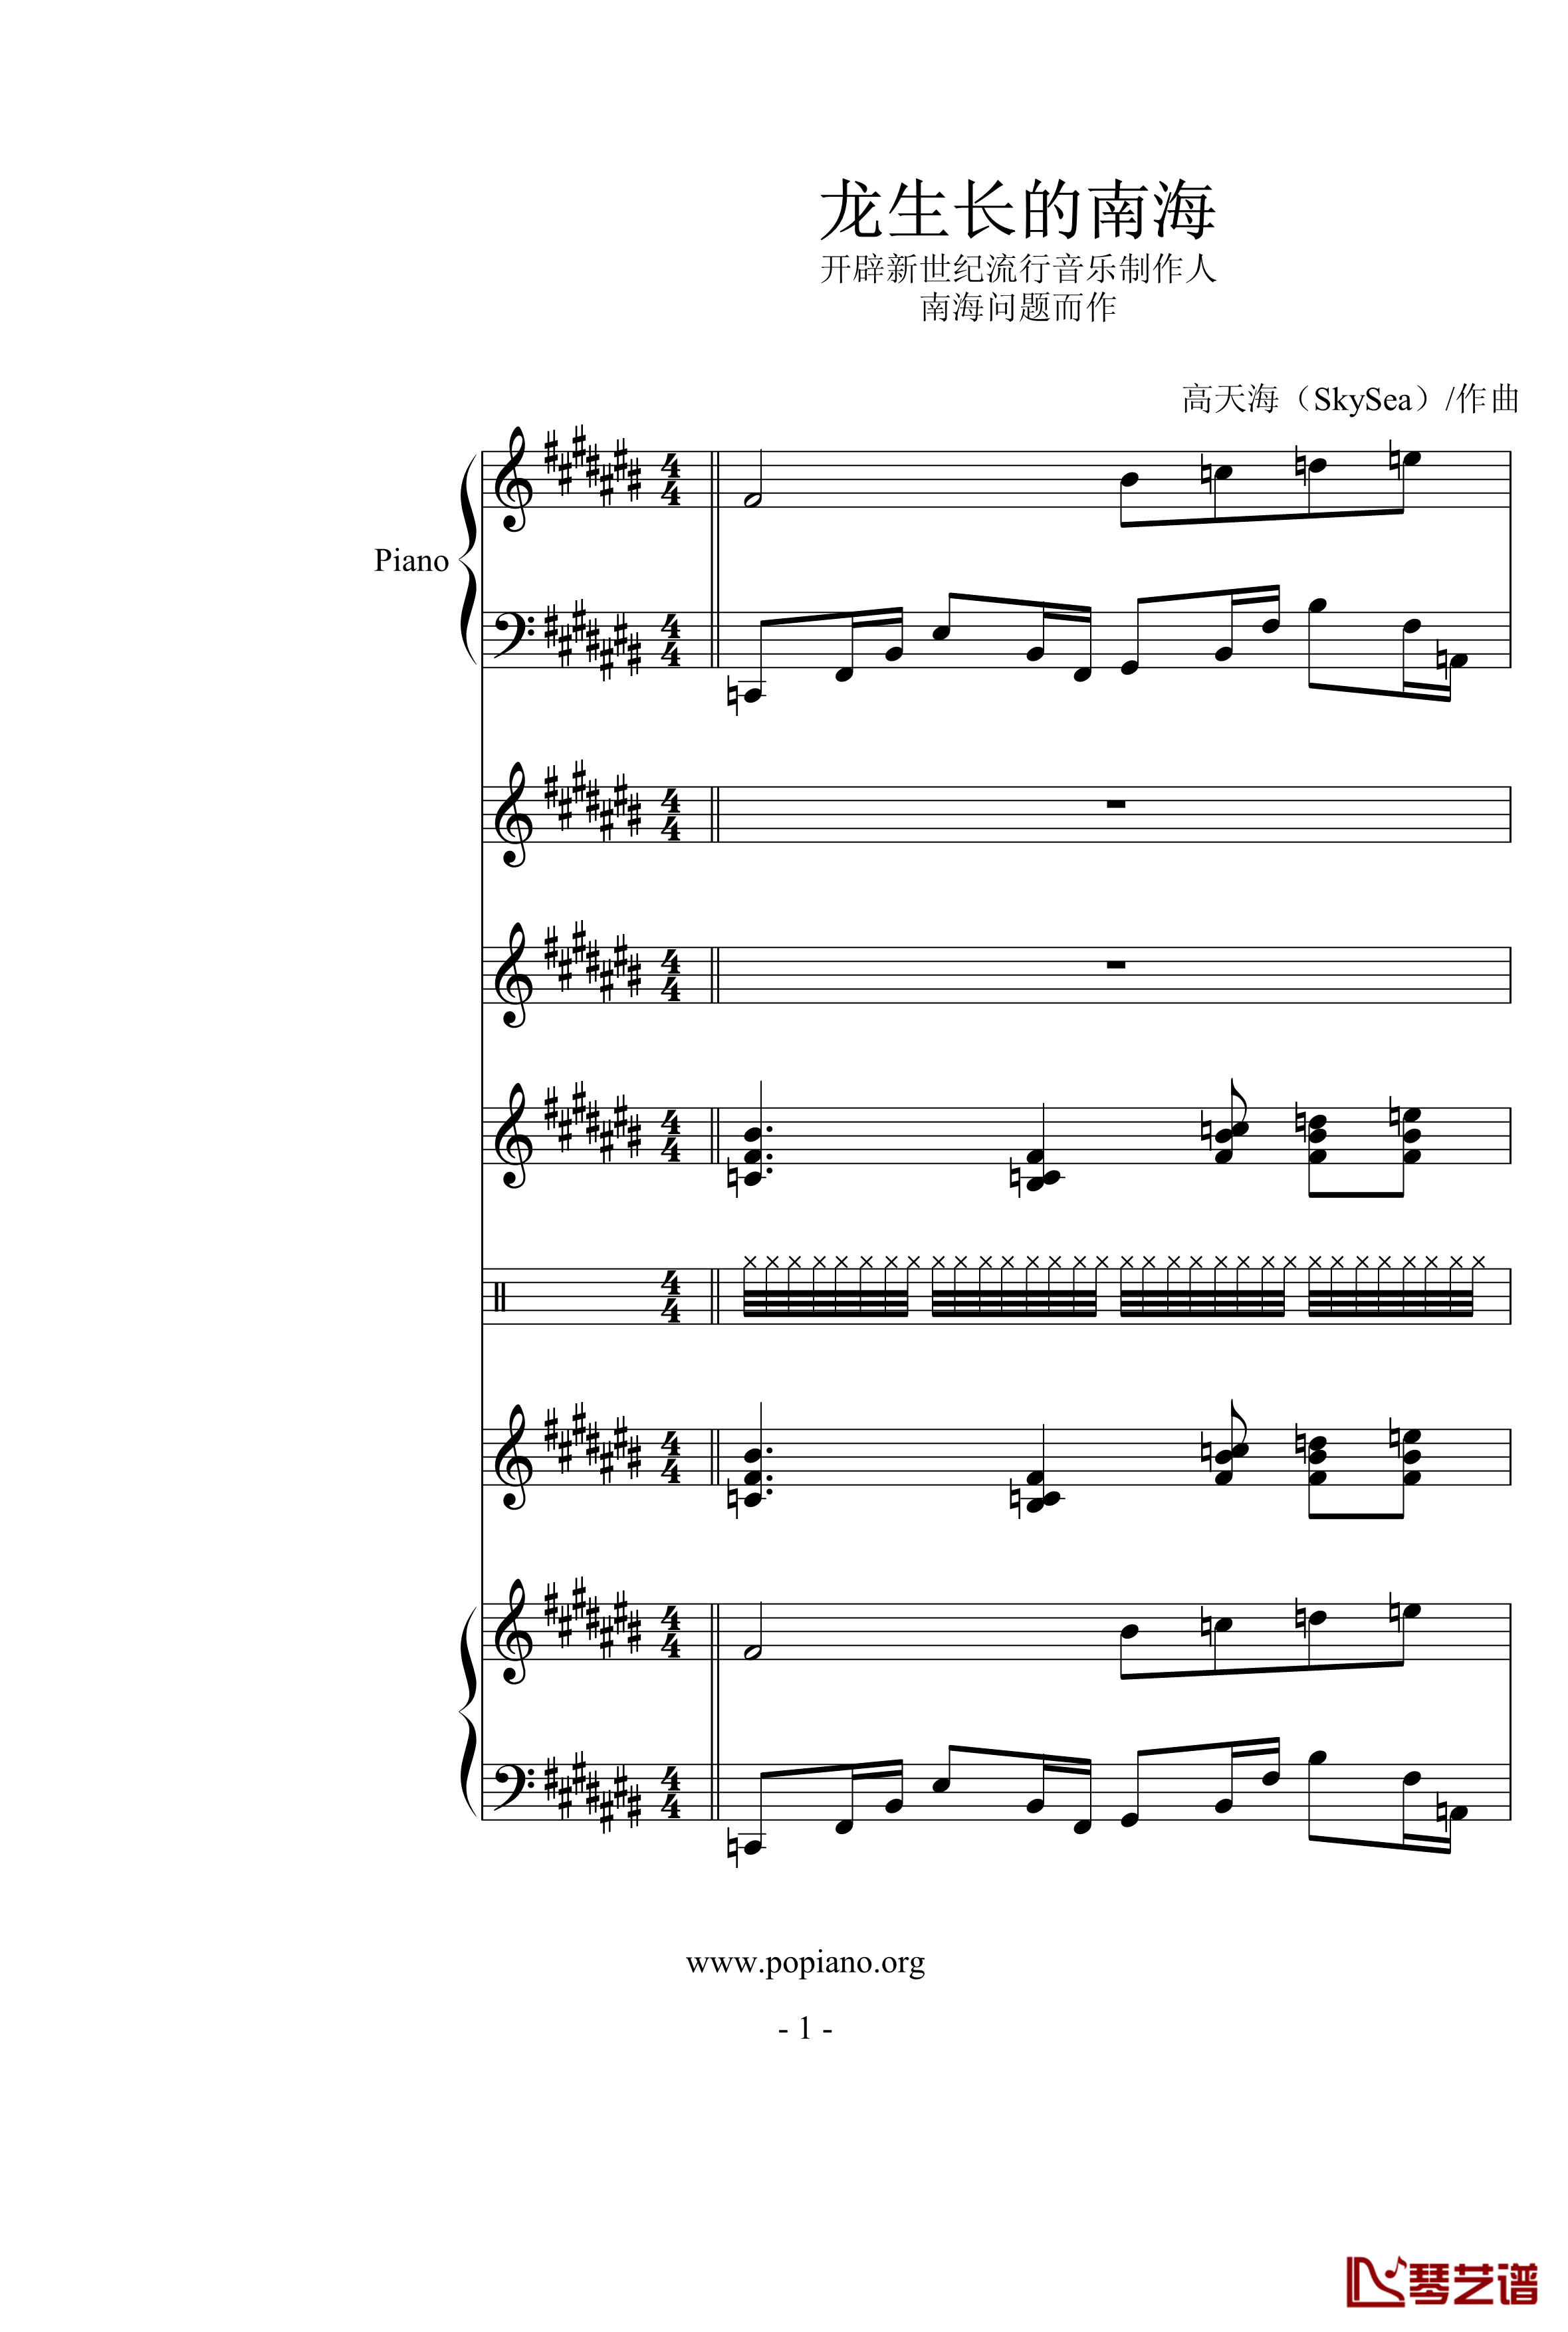 龙生长的南海钢琴谱-高天海（Skysea)1